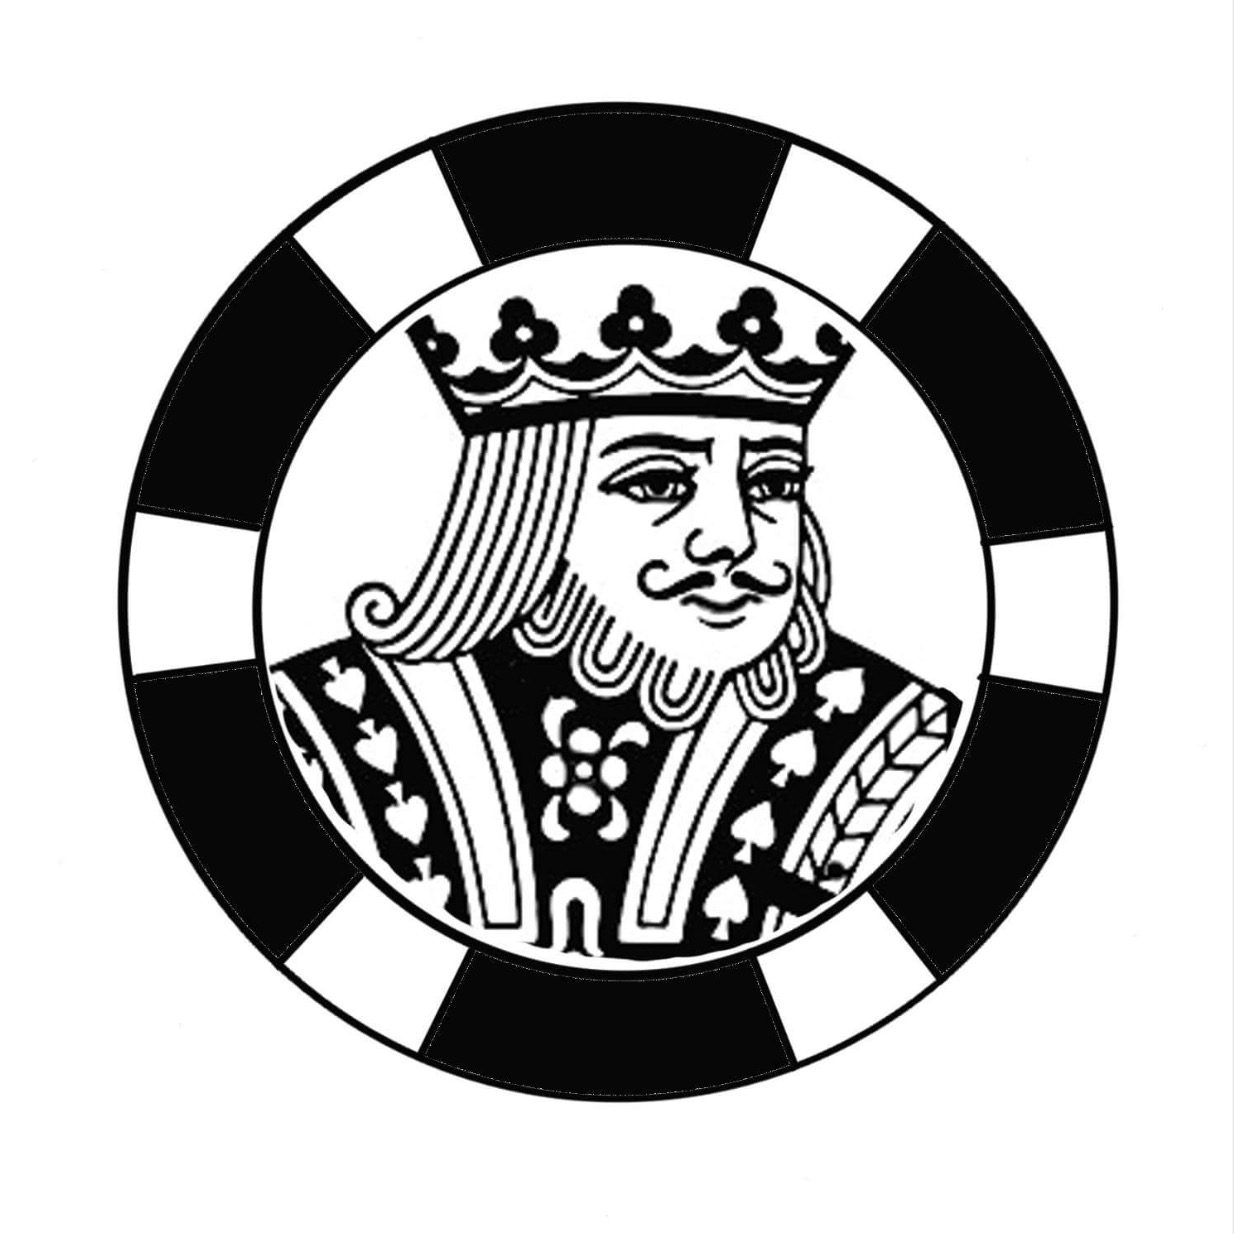 Florida Fun Casino Party LLC's Logo